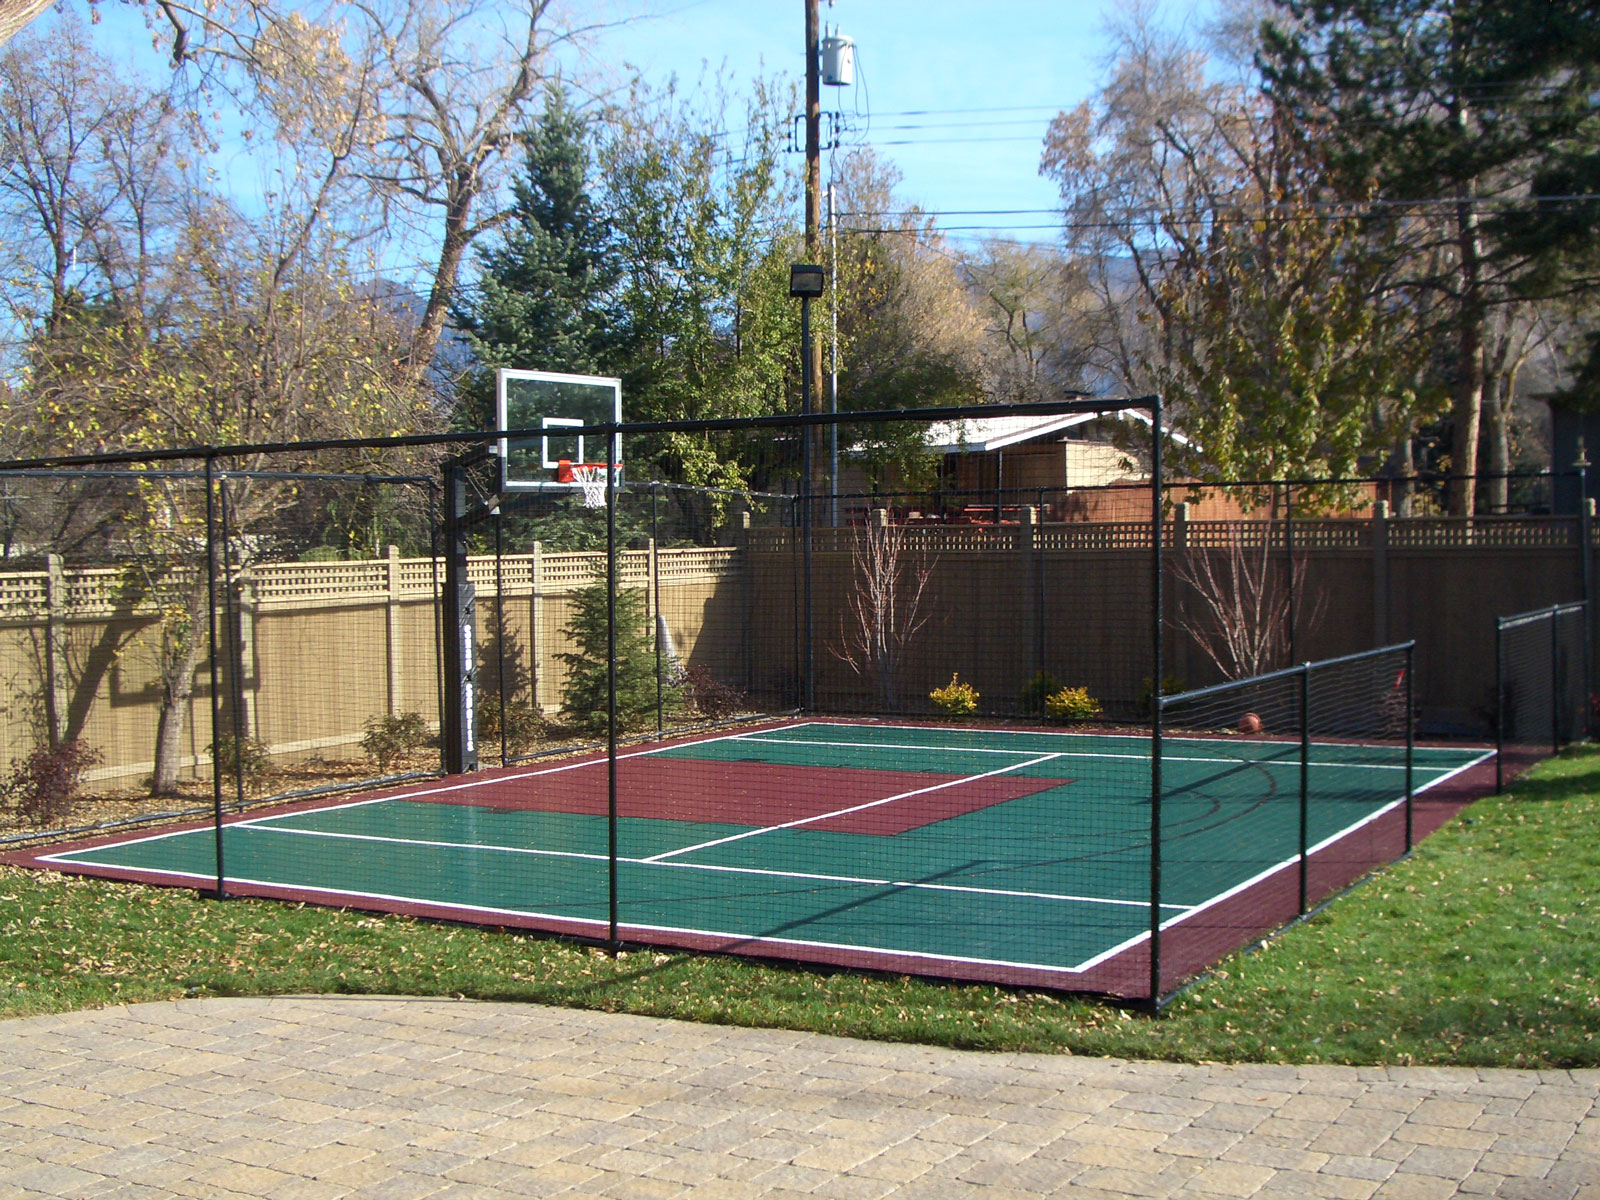 Dunkstar Backyard Basketball Court Diy Basketball Courts